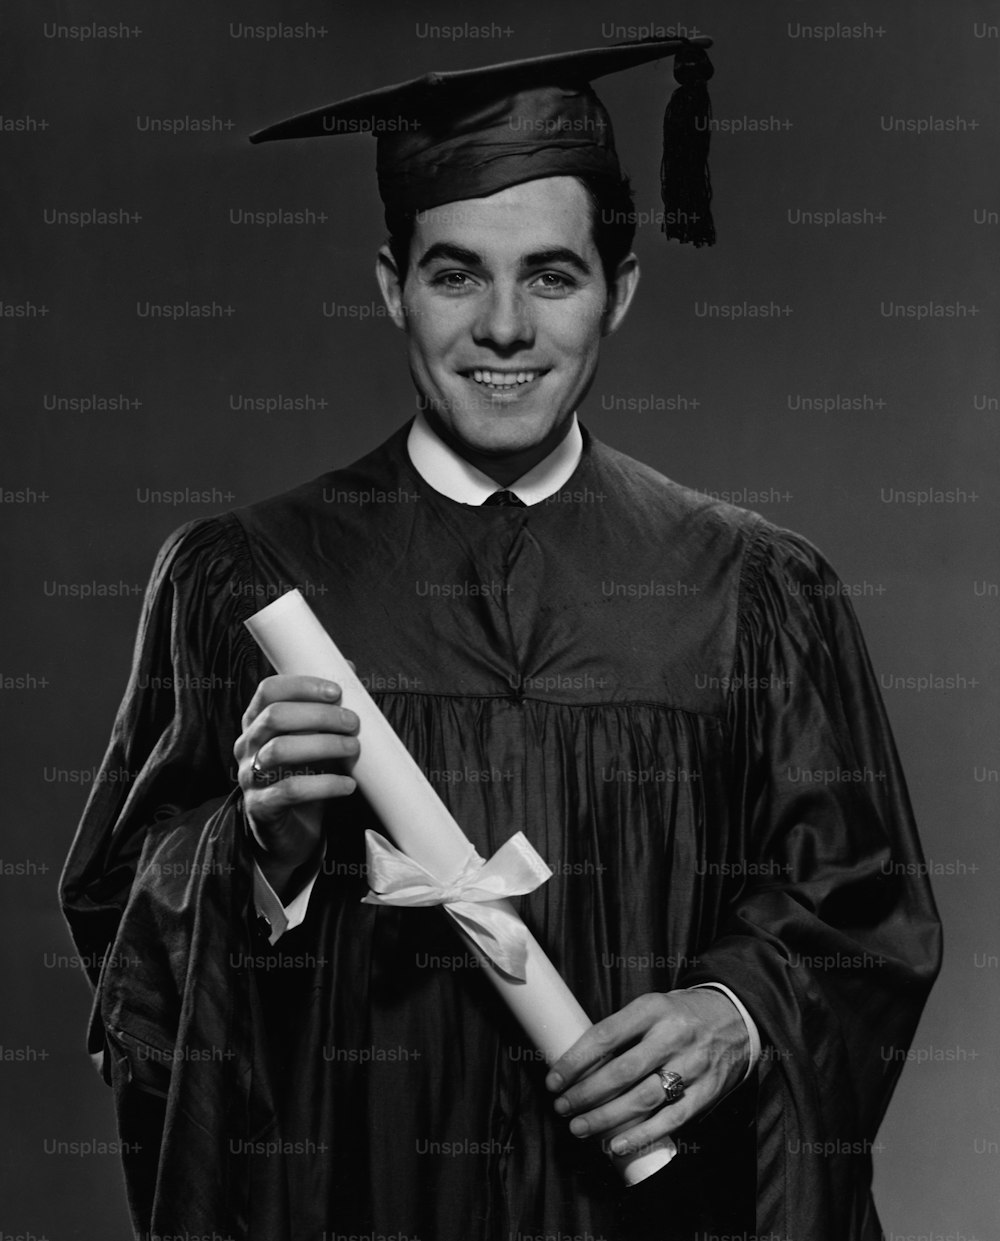 Ein junger Mann in Abschlusskleid und Mörtelbrett, mit seinem Diplom, um 1960. (Foto von George Marks / Retrofile / Getty Images)